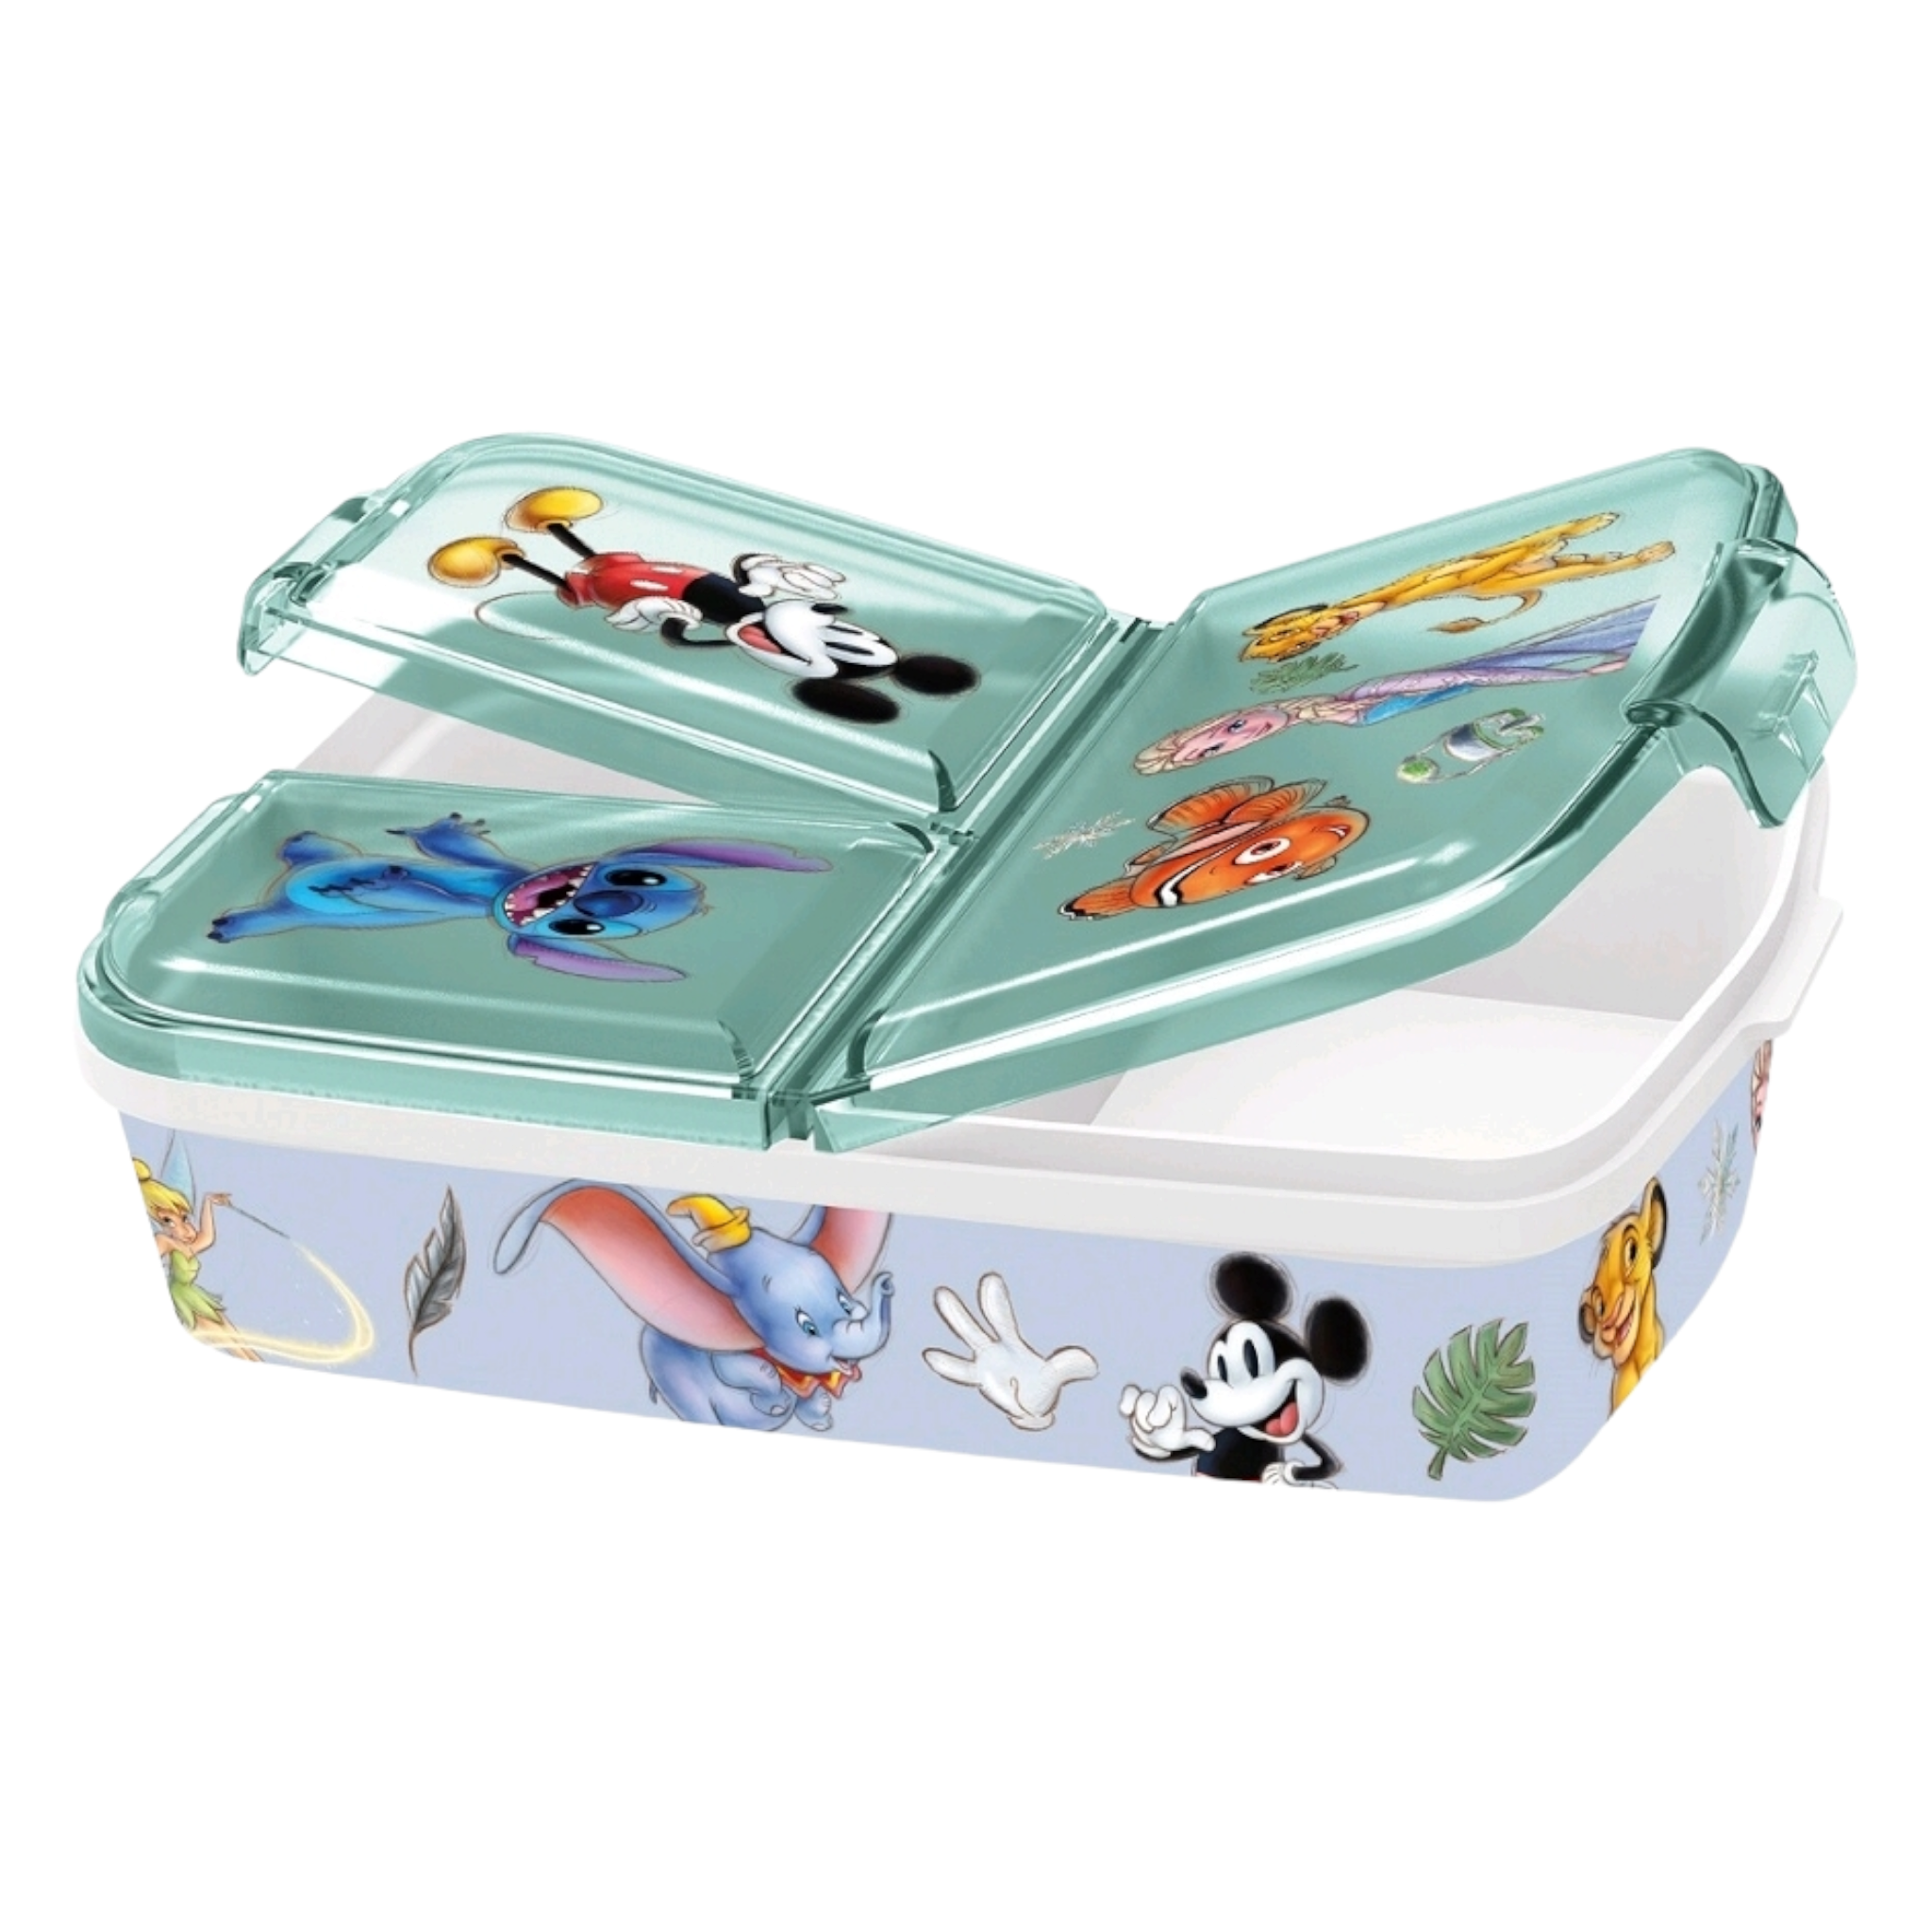 Disney Sandwich Lunch Box Multi Compartment 20923